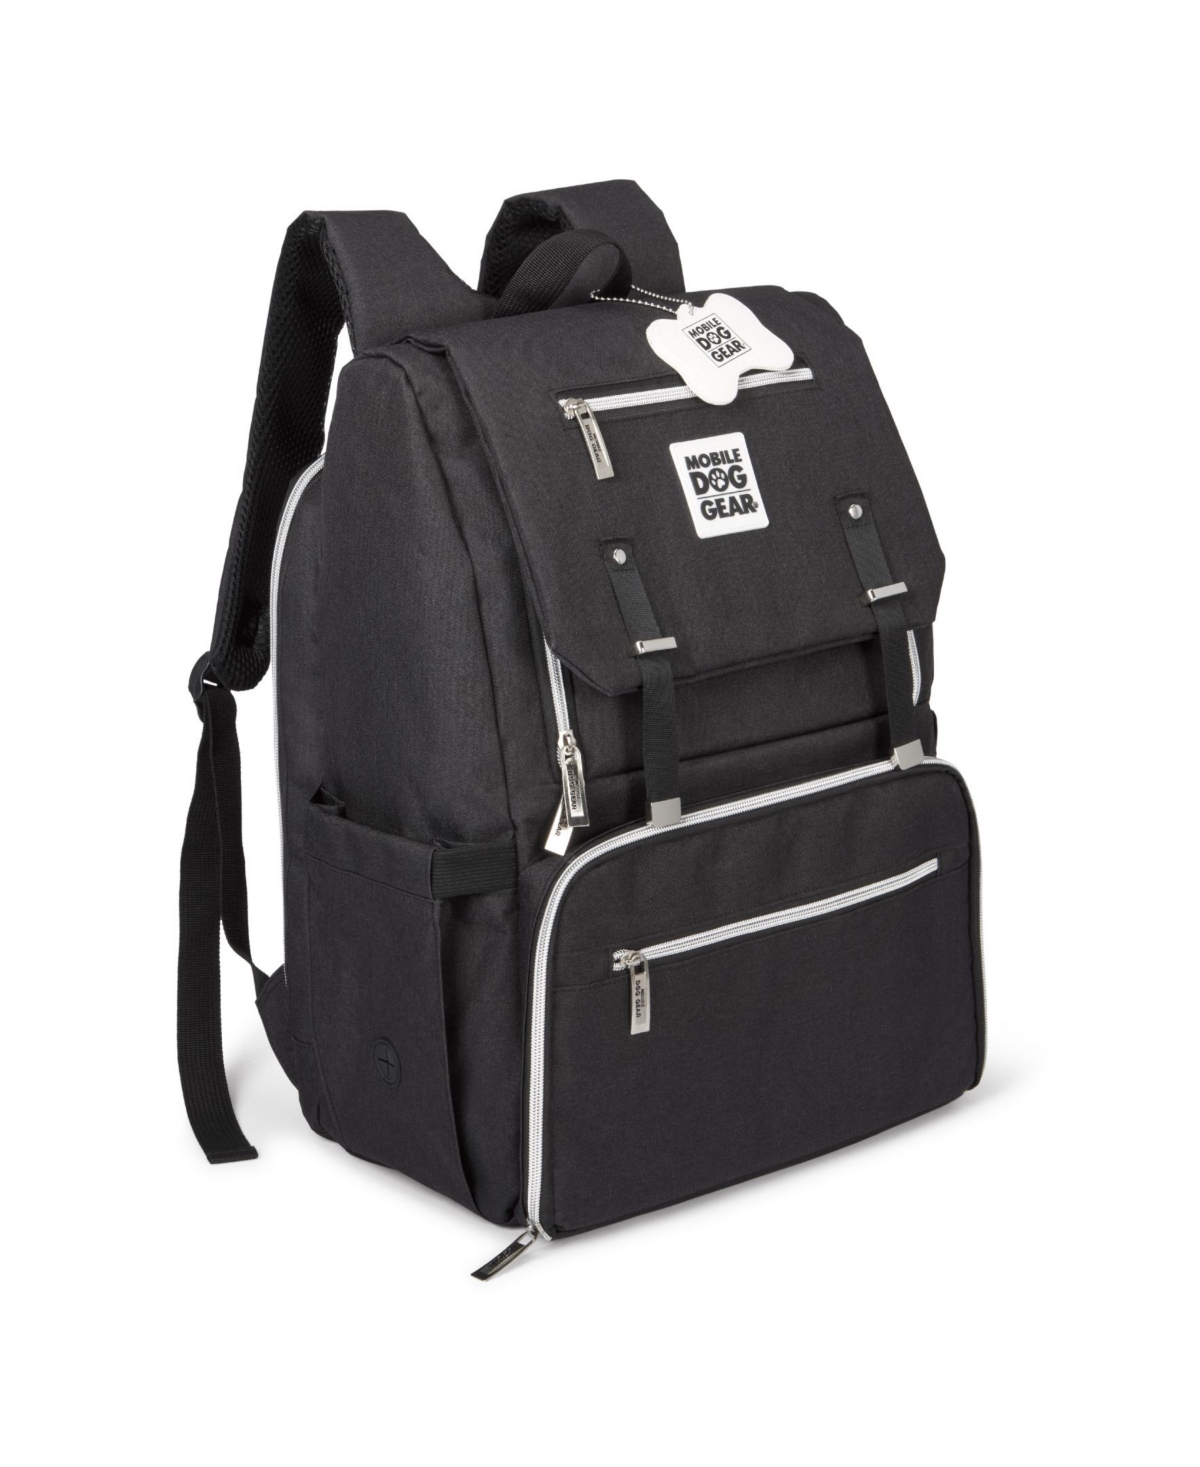 Ultimate Week Away Backpack, Set of 4 - Gray